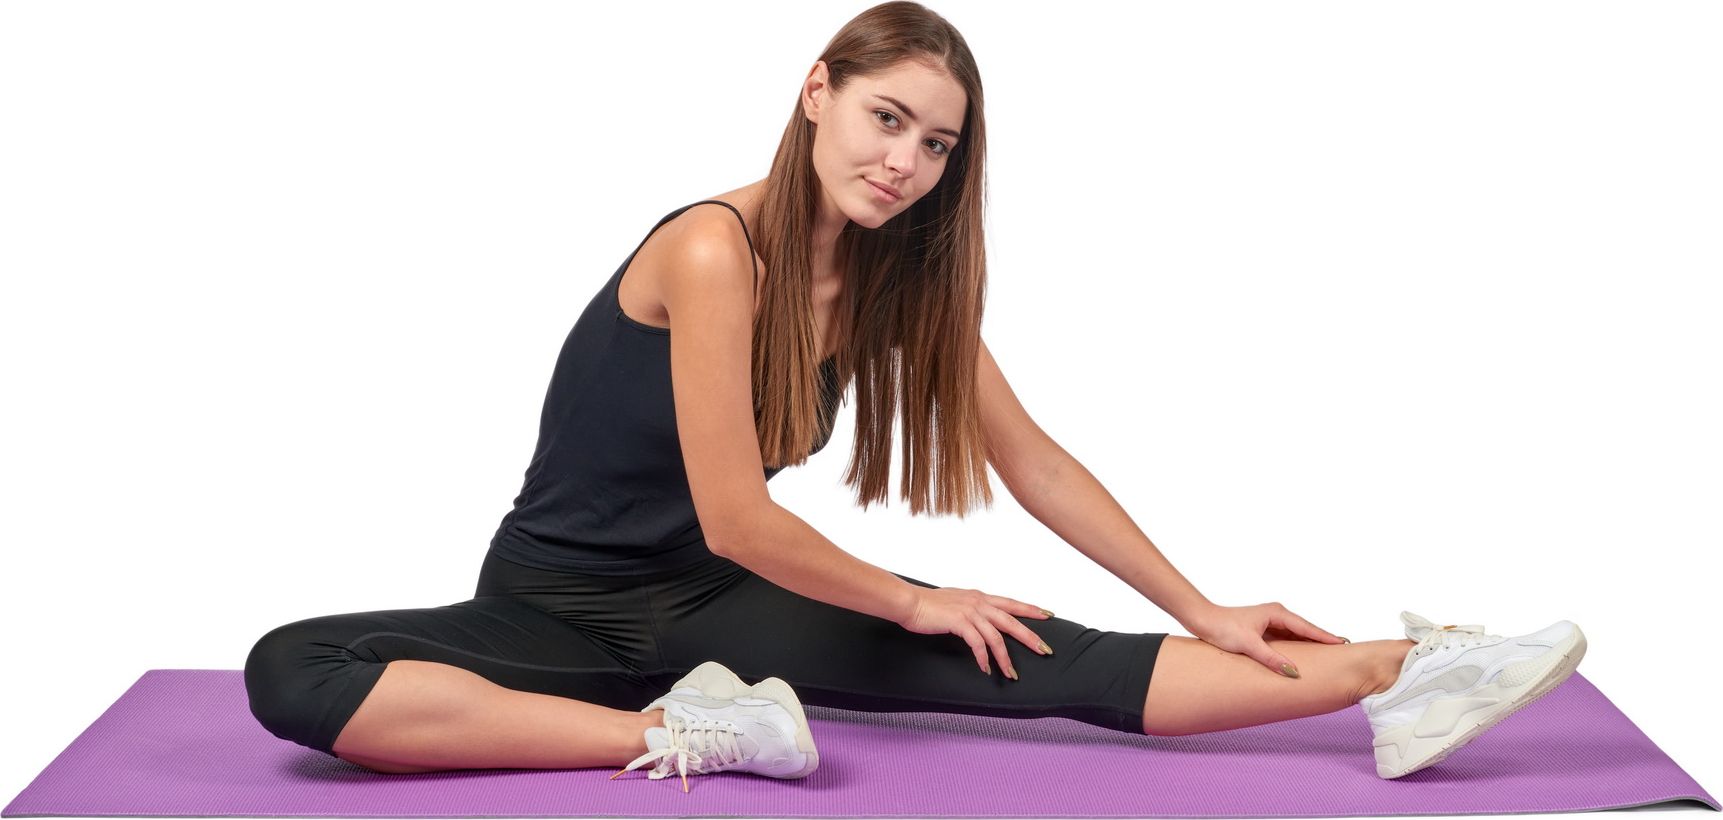 Коврик для йоги и фитнеса, 190*61*0,6 см, двухслойный фиолетовый/серый